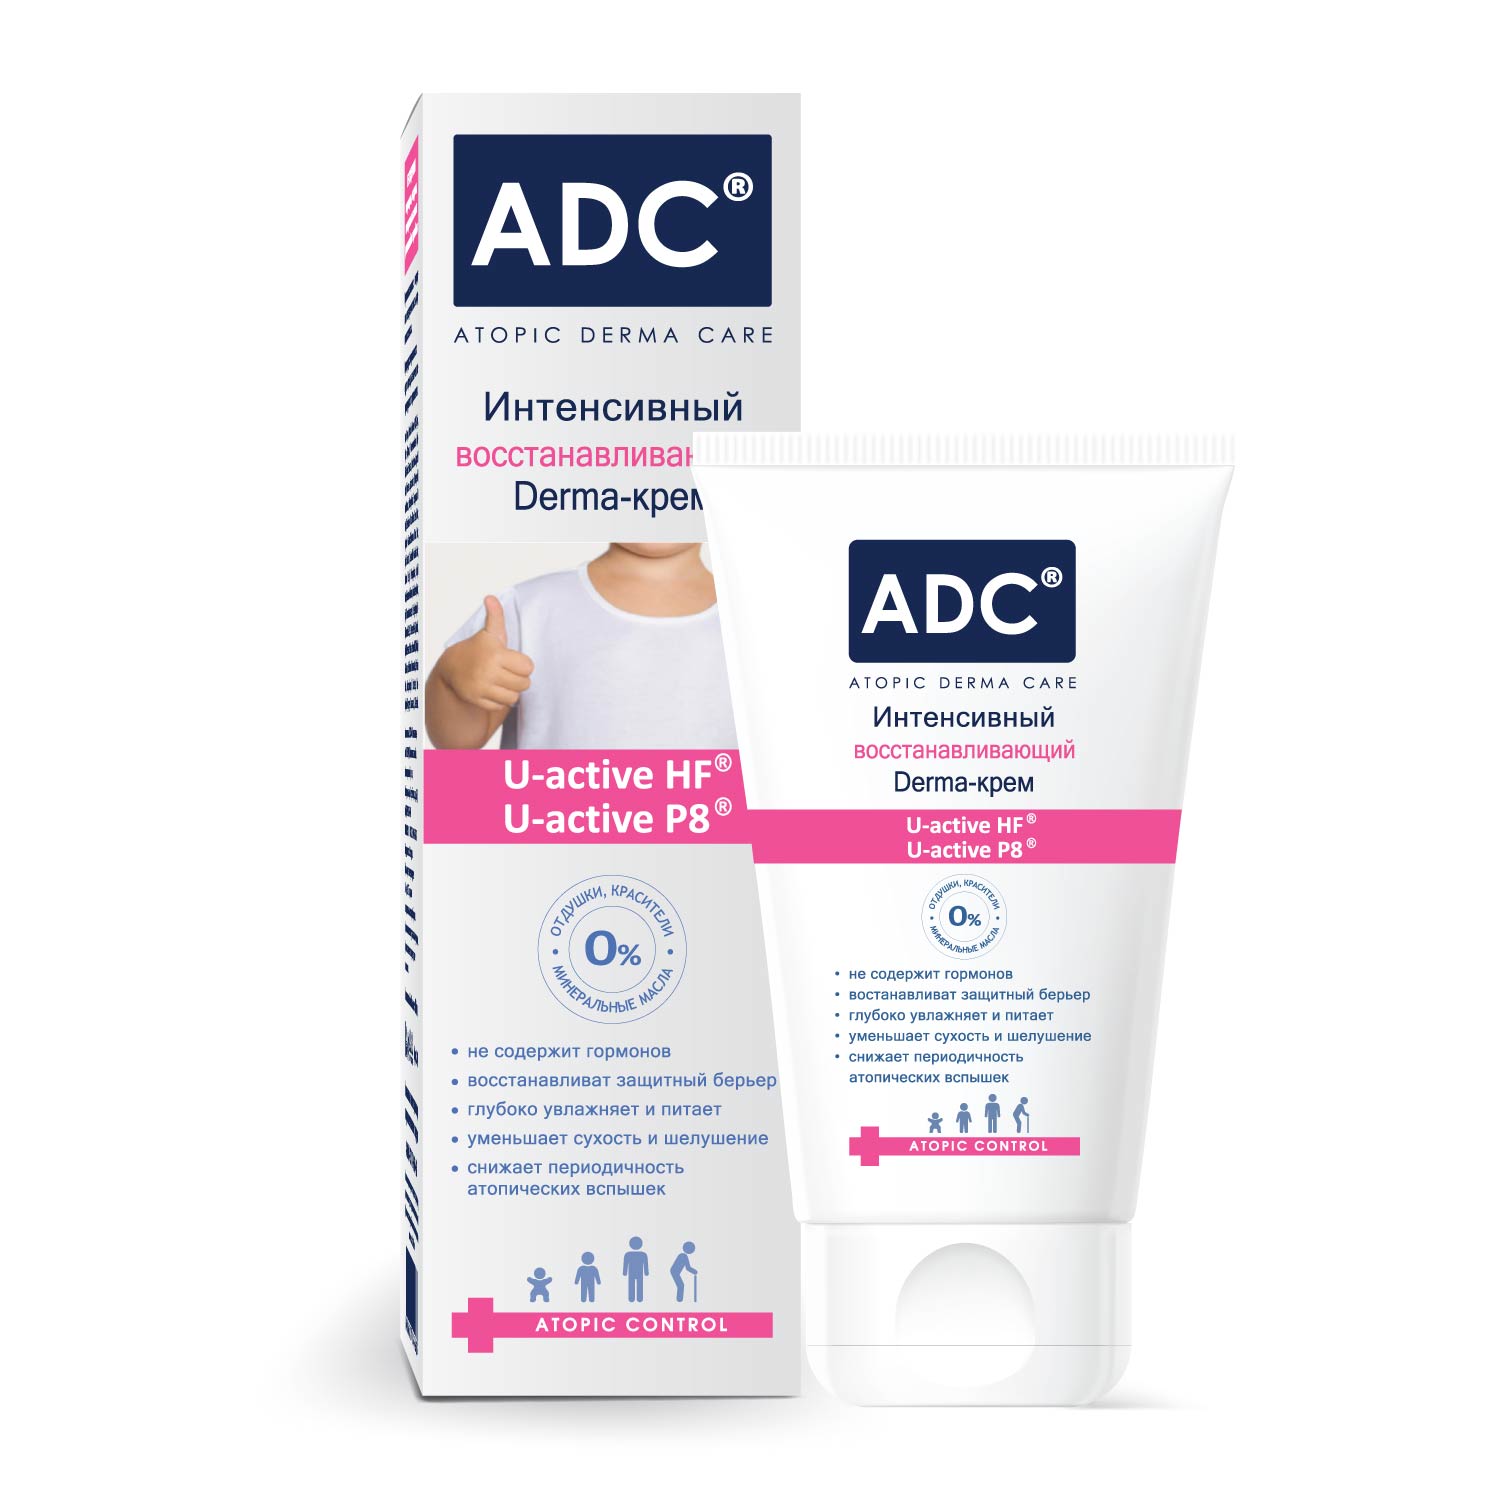 Интенсивный восстанавливающий Derma-крем серии ADC 40мл 7404 интенсивный восстанавливающий derma крем серии adc 40мл 7405